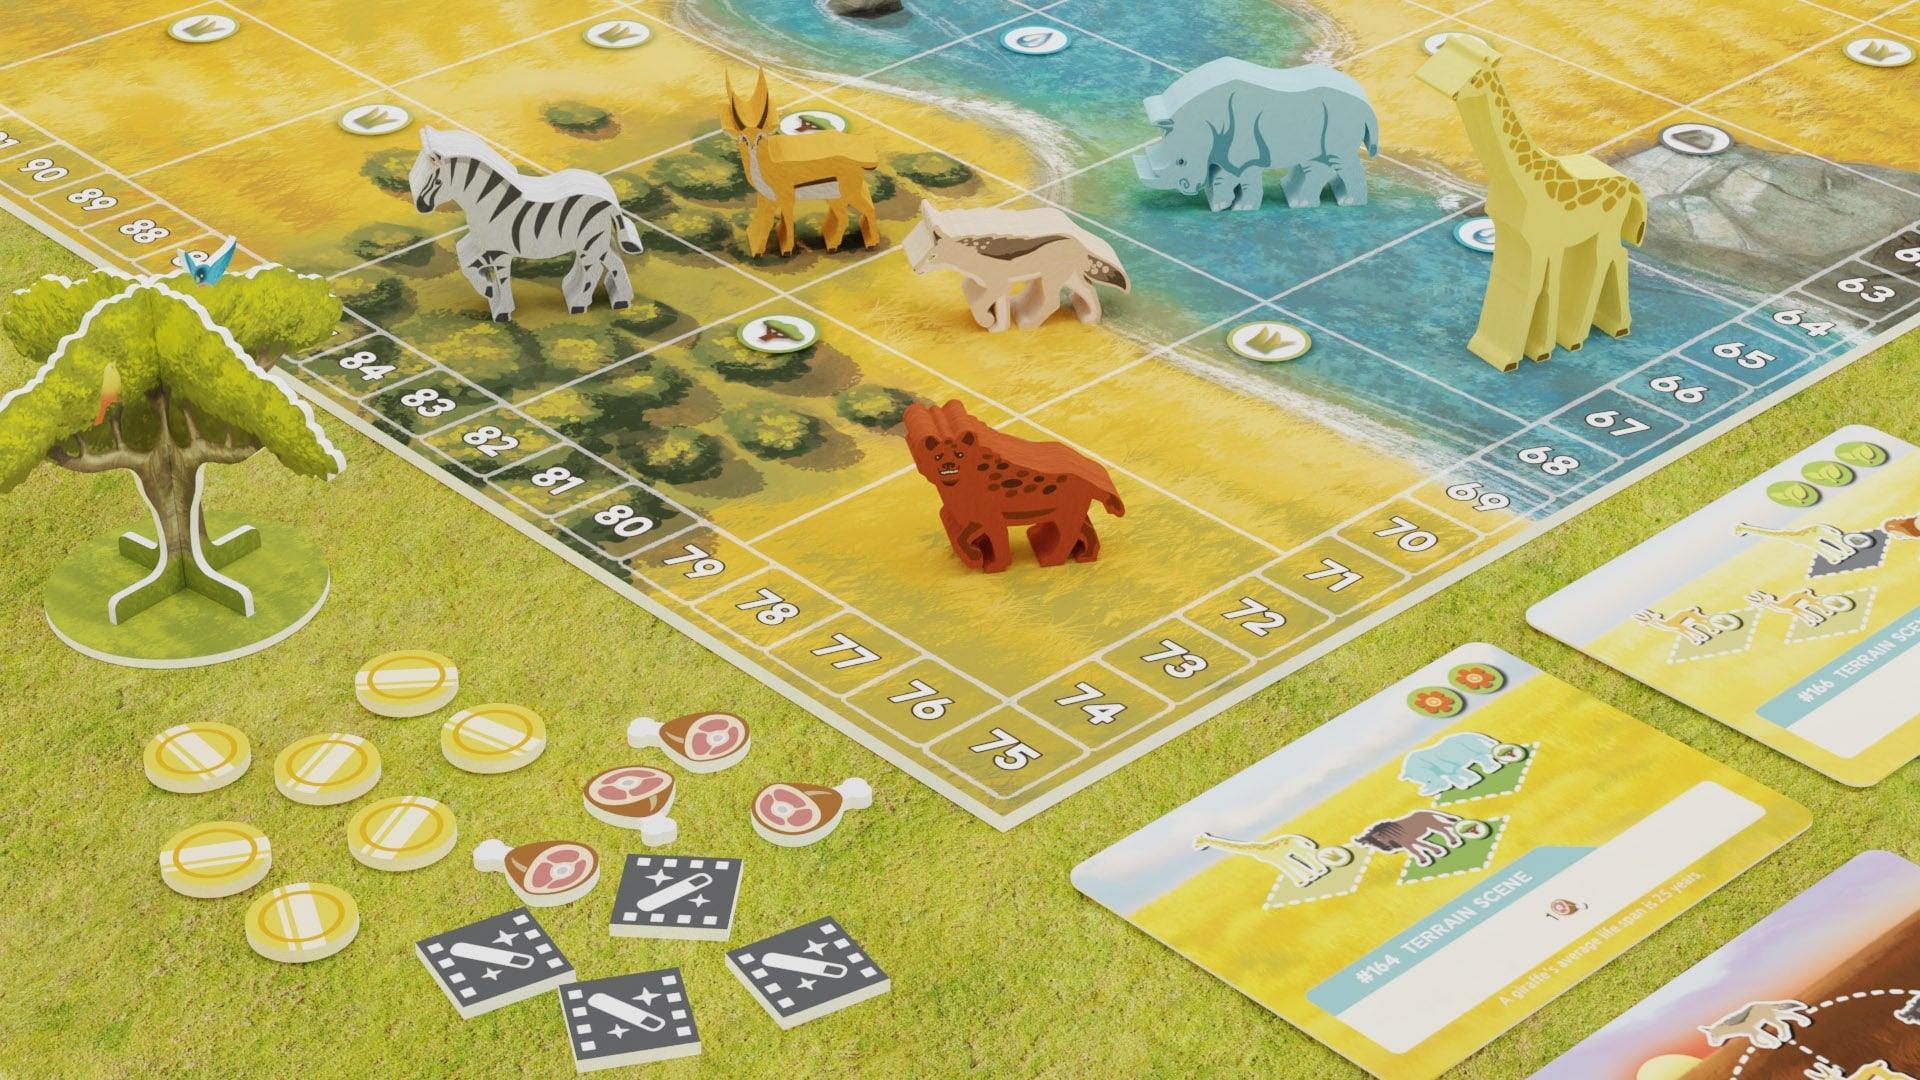 Wild: Serengeti - Gaming Library